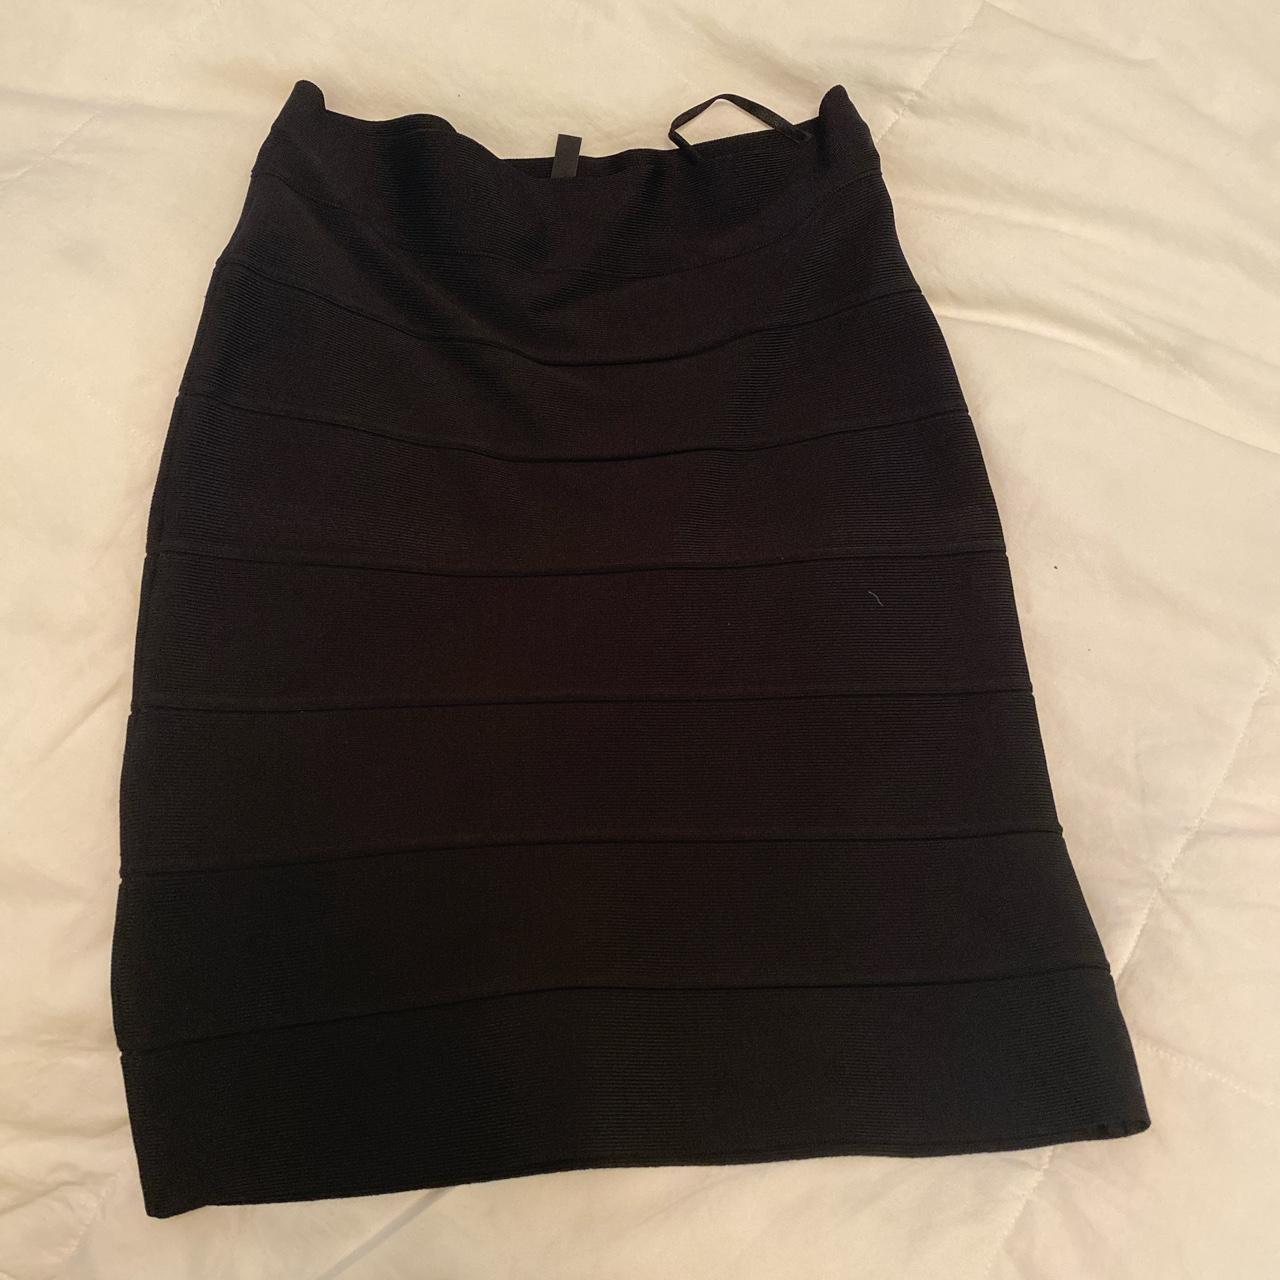 BCBG BLACK SKIRT (pencil skirt but can be... - Depop